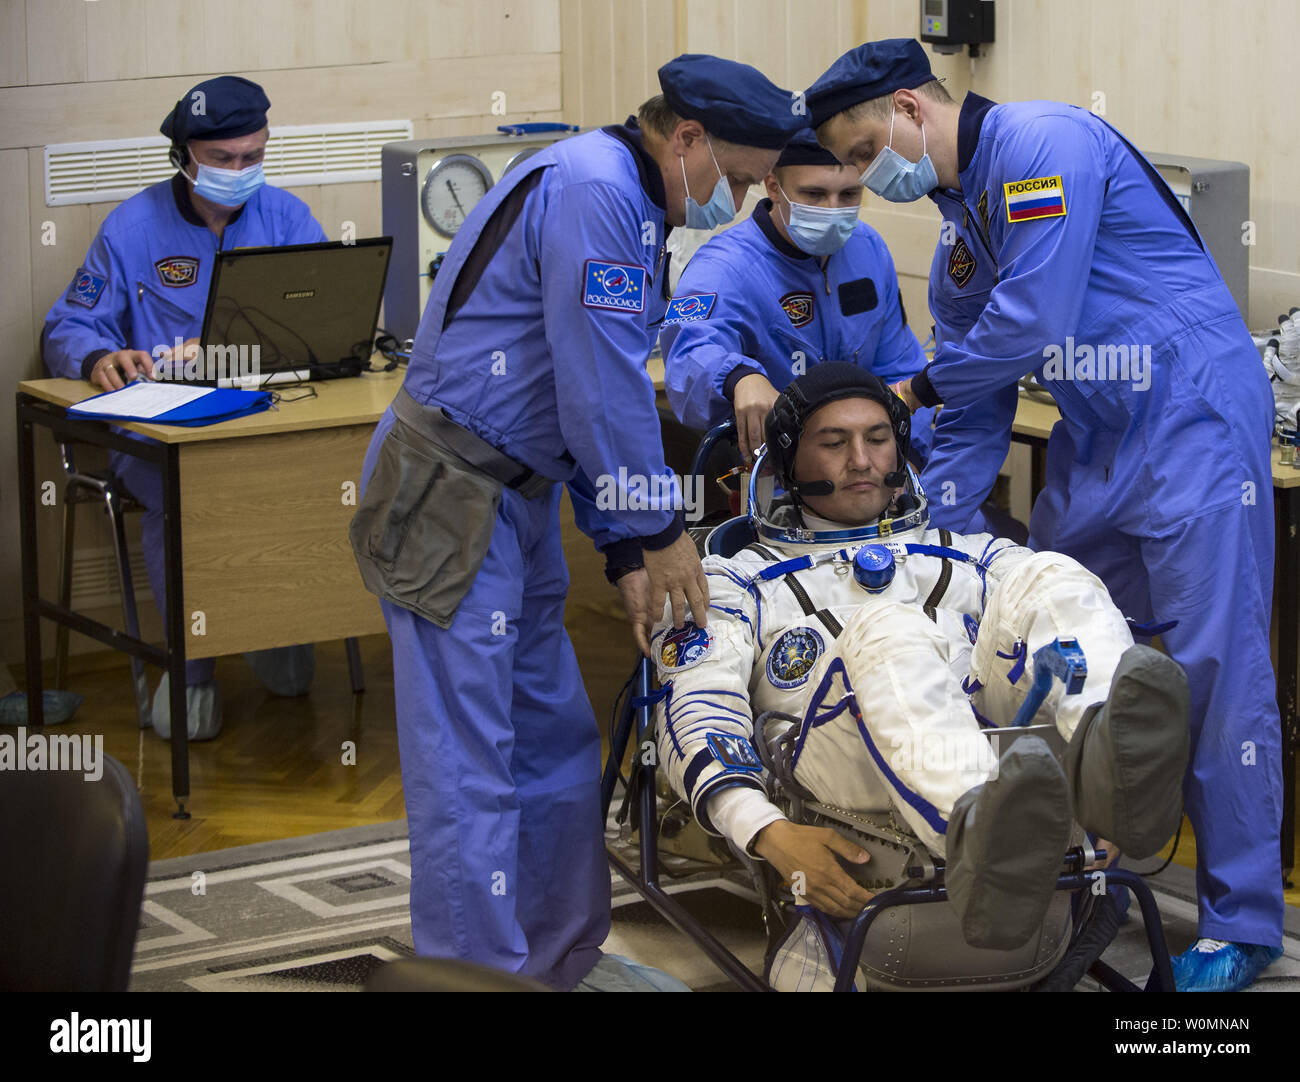 Expedition 44 Tecnico di volo Kjell Lindgren della NASA ha il suo russo Sokol tuta controllato della pressione nella preparazione per il suo lancio a bordo della Soyuz TMA-17M navicella spaziale su Mercoledì, 22 luglio 2015, presso il cosmodromo di Baikonur in Kazakistan. Lancio del razzo Soyuz è prevista per le prime ore di luglio 23 Cosmodromo di tempo e potrà trasportare Lindgren e compagni crewmates, Tecnico di volo Kimiya Yui della Japan Aerospace Exploration Agency (JAXA) e Soyuz Commander Oleg Kononenko di l'agenzia Spaziale Federale Russa Roscosmos (), in orbita per iniziare i loro cinque mesi di missione sullo spazio internazionale St Foto Stock